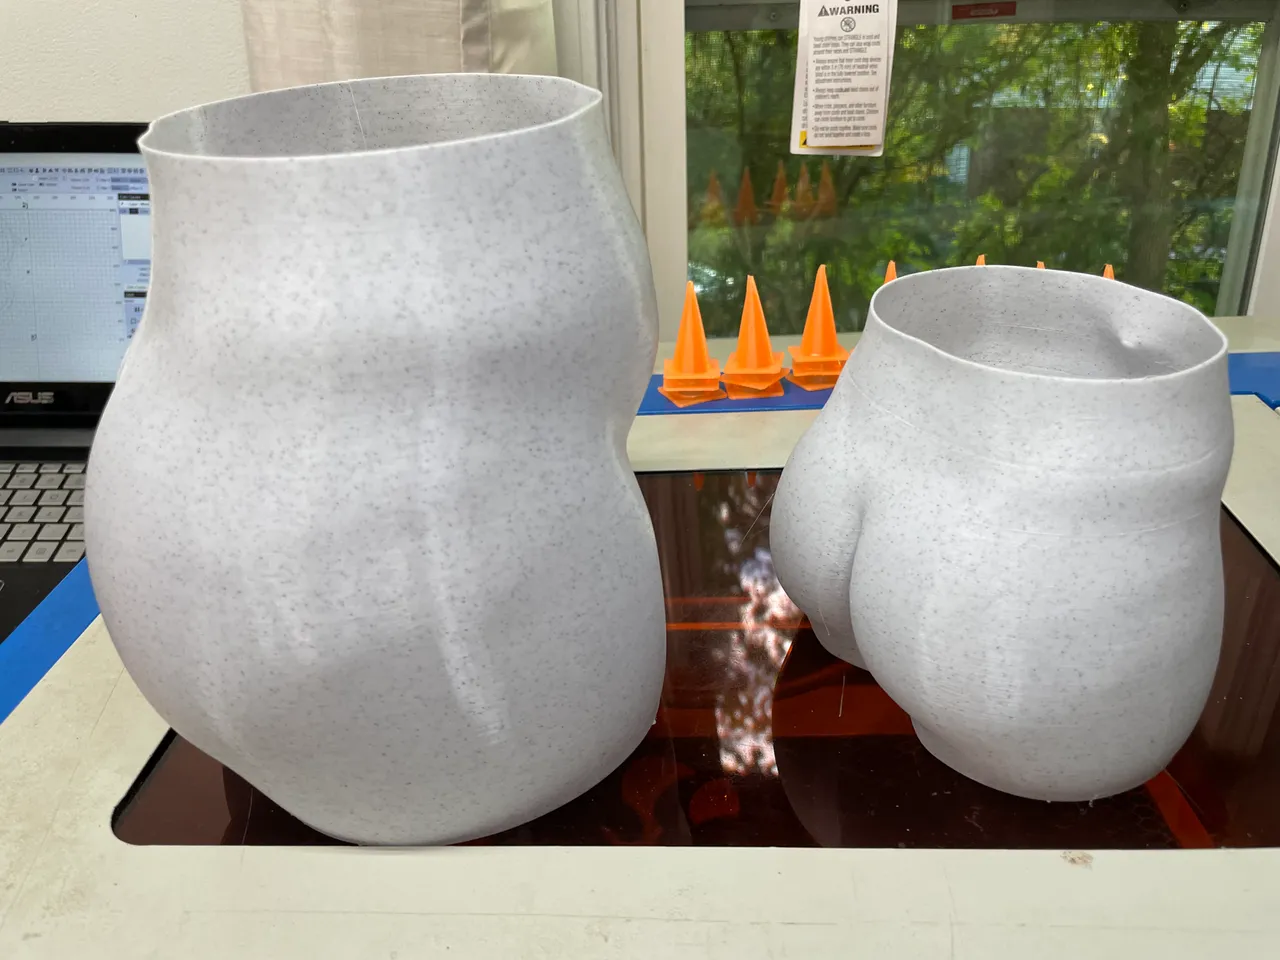 planter vase mode by JMC Laser Engraving | Download free | Printables.com